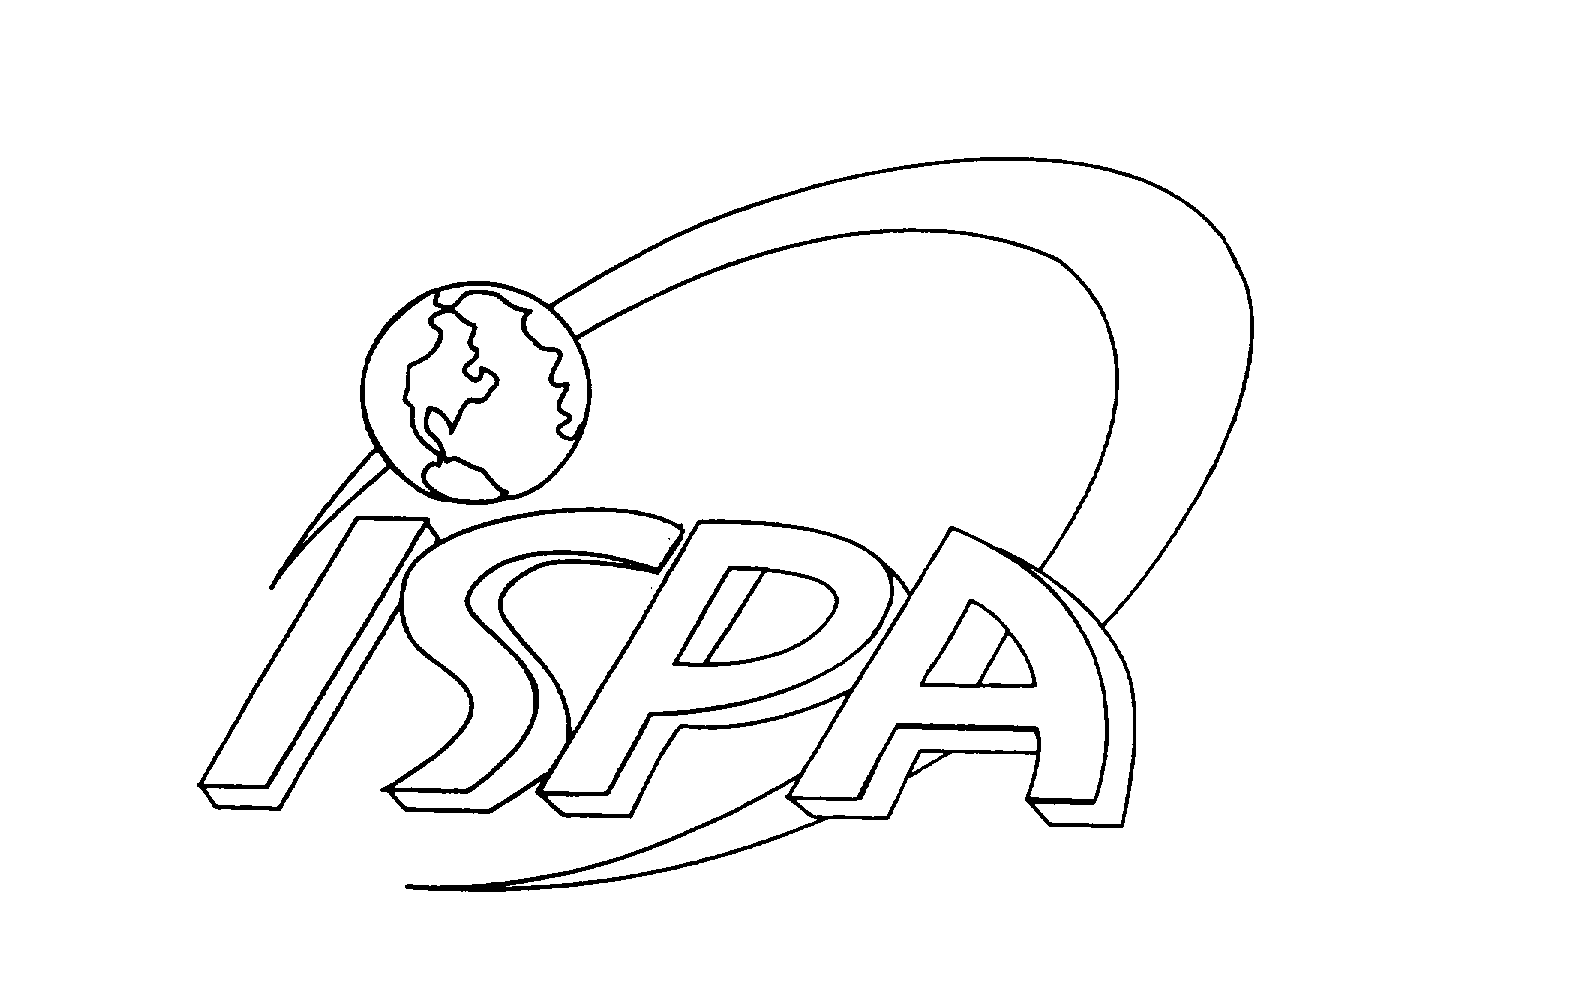 Trademark Logo ISPA